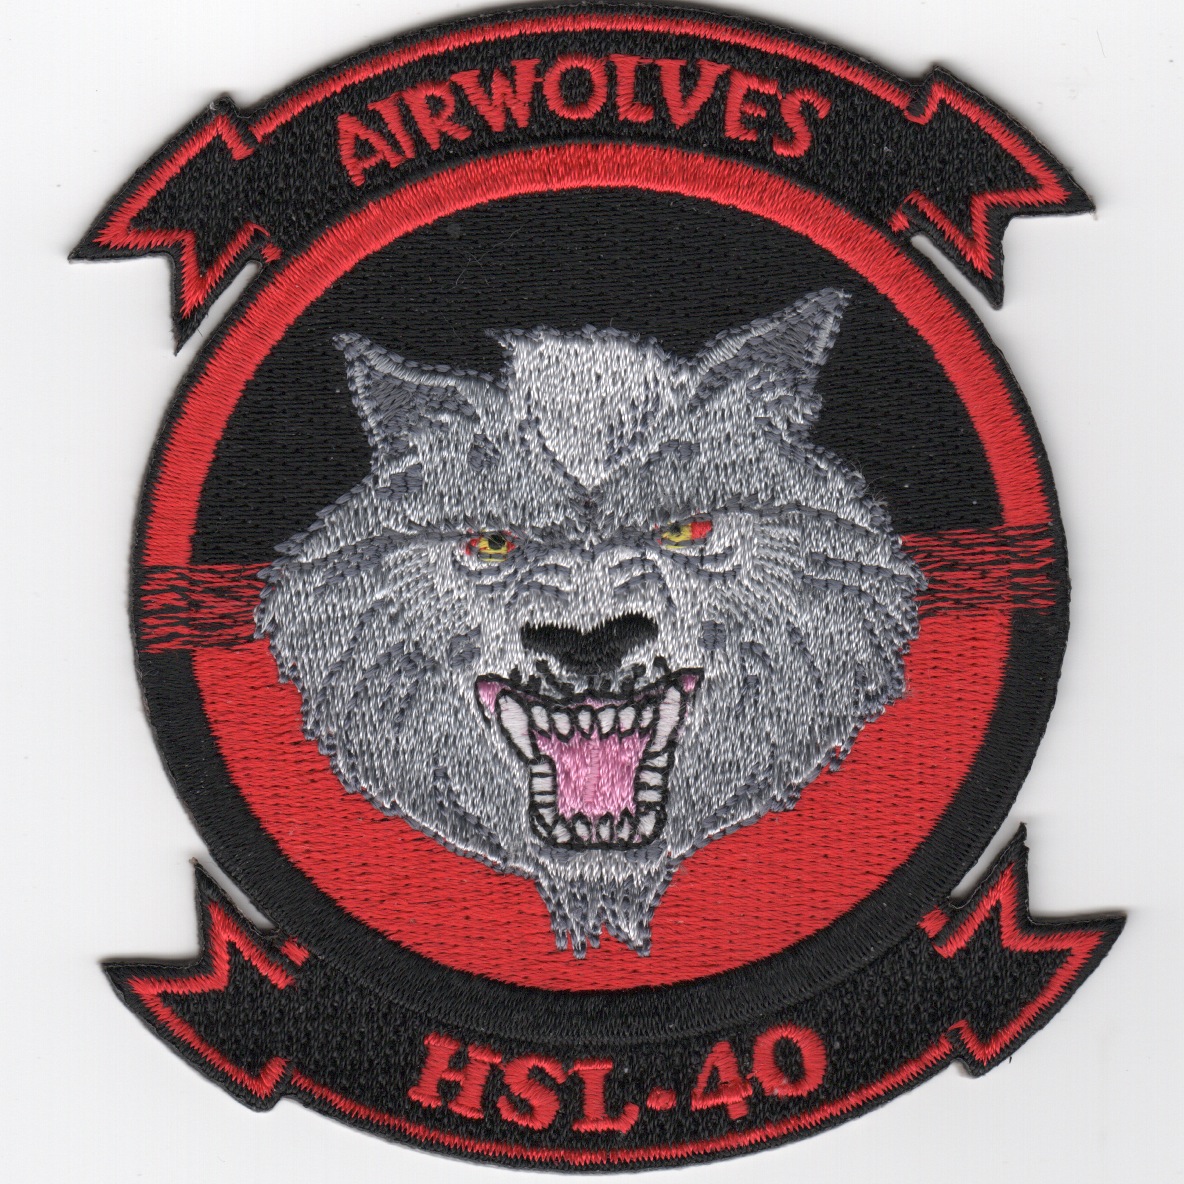 HSL-40 Squadron Patch